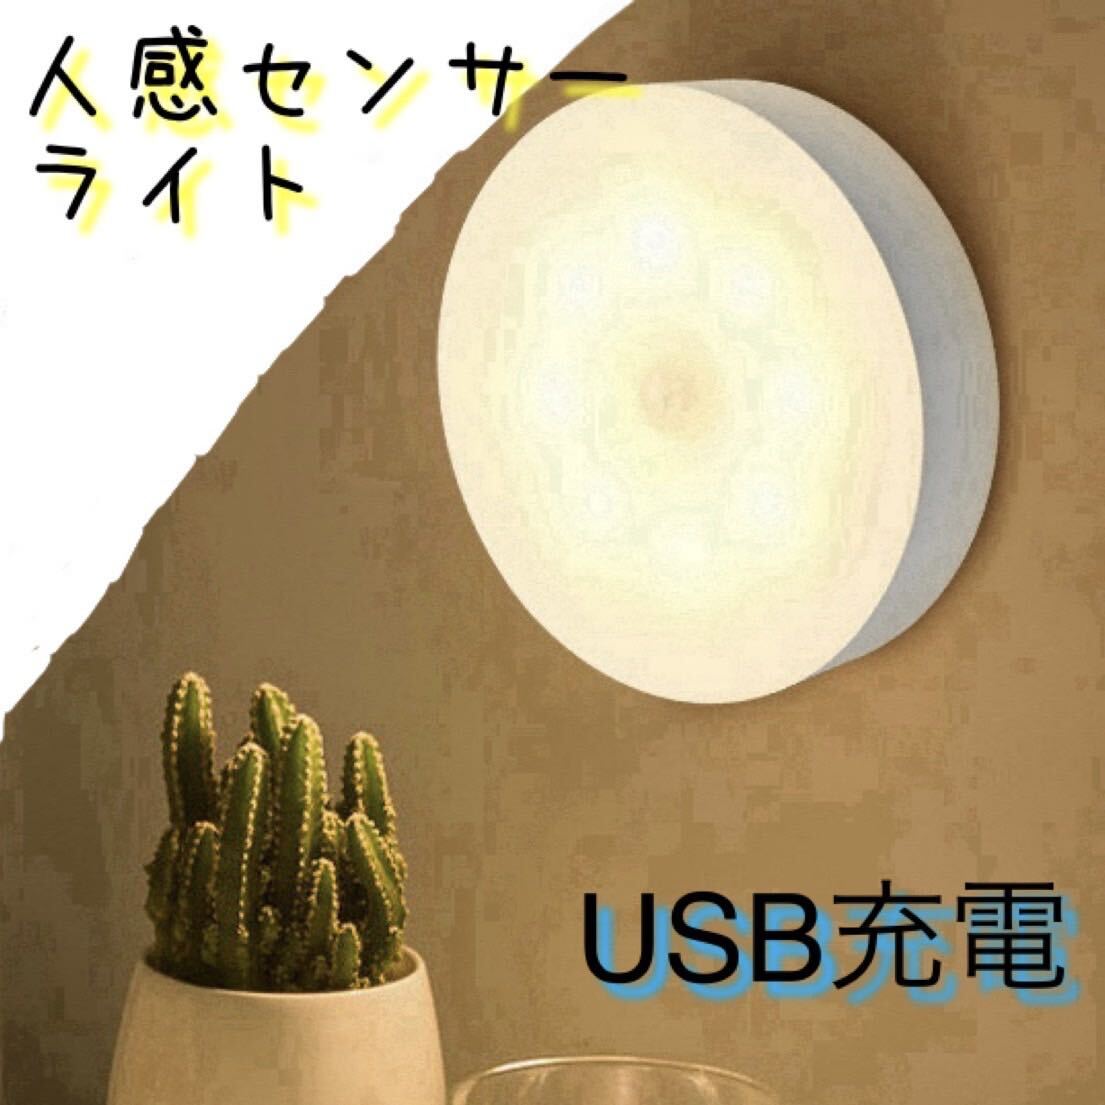 センサーライト 人感 電灯 室内 自動 USB 電球 蛍光灯 LED